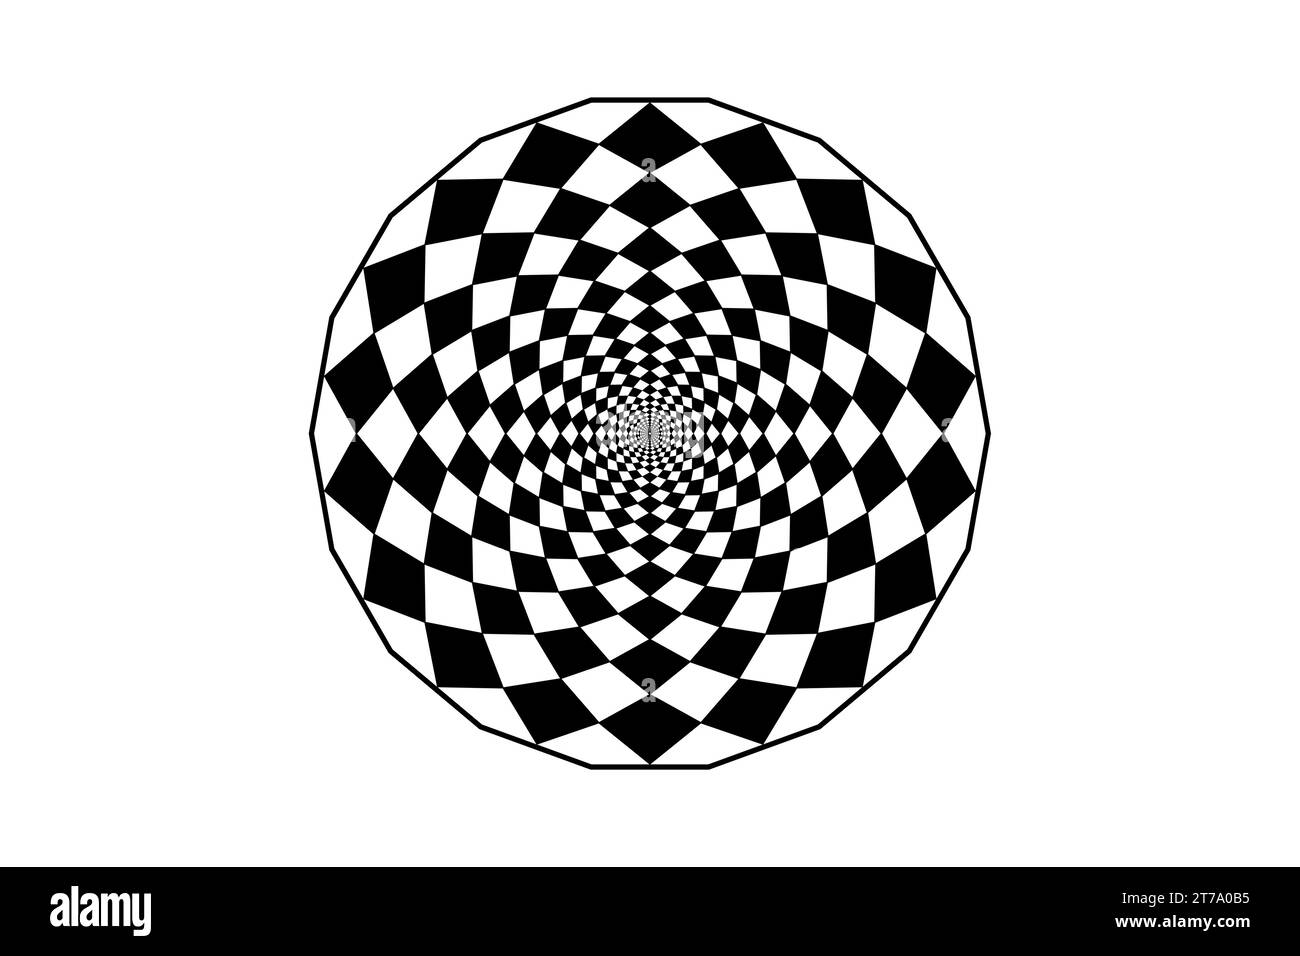 Design ipnotico art mandala, illusione ottica a spirale. Opuscoli opuscoli circolari classici a scacchi ottici in bianco e nero. Illustrazione vettoriale Illustrazione Vettoriale